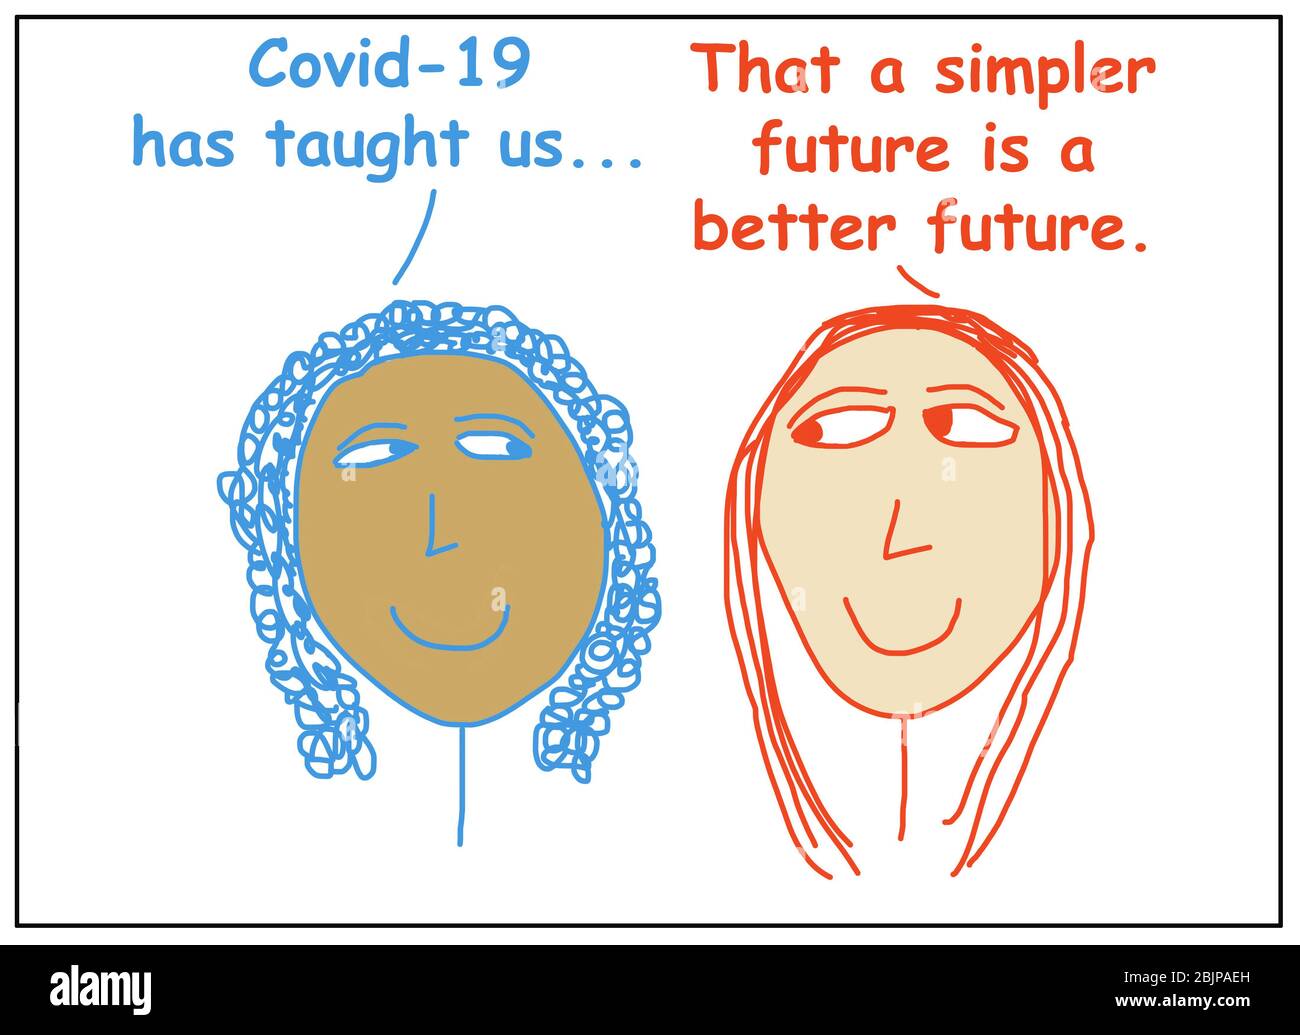 Dessin animé de couleur de deux femmes ethniquement diverses disant que Covid 19 nous a appris qu'un avenir plus simple est un avenir meilleur. Banque D'Images